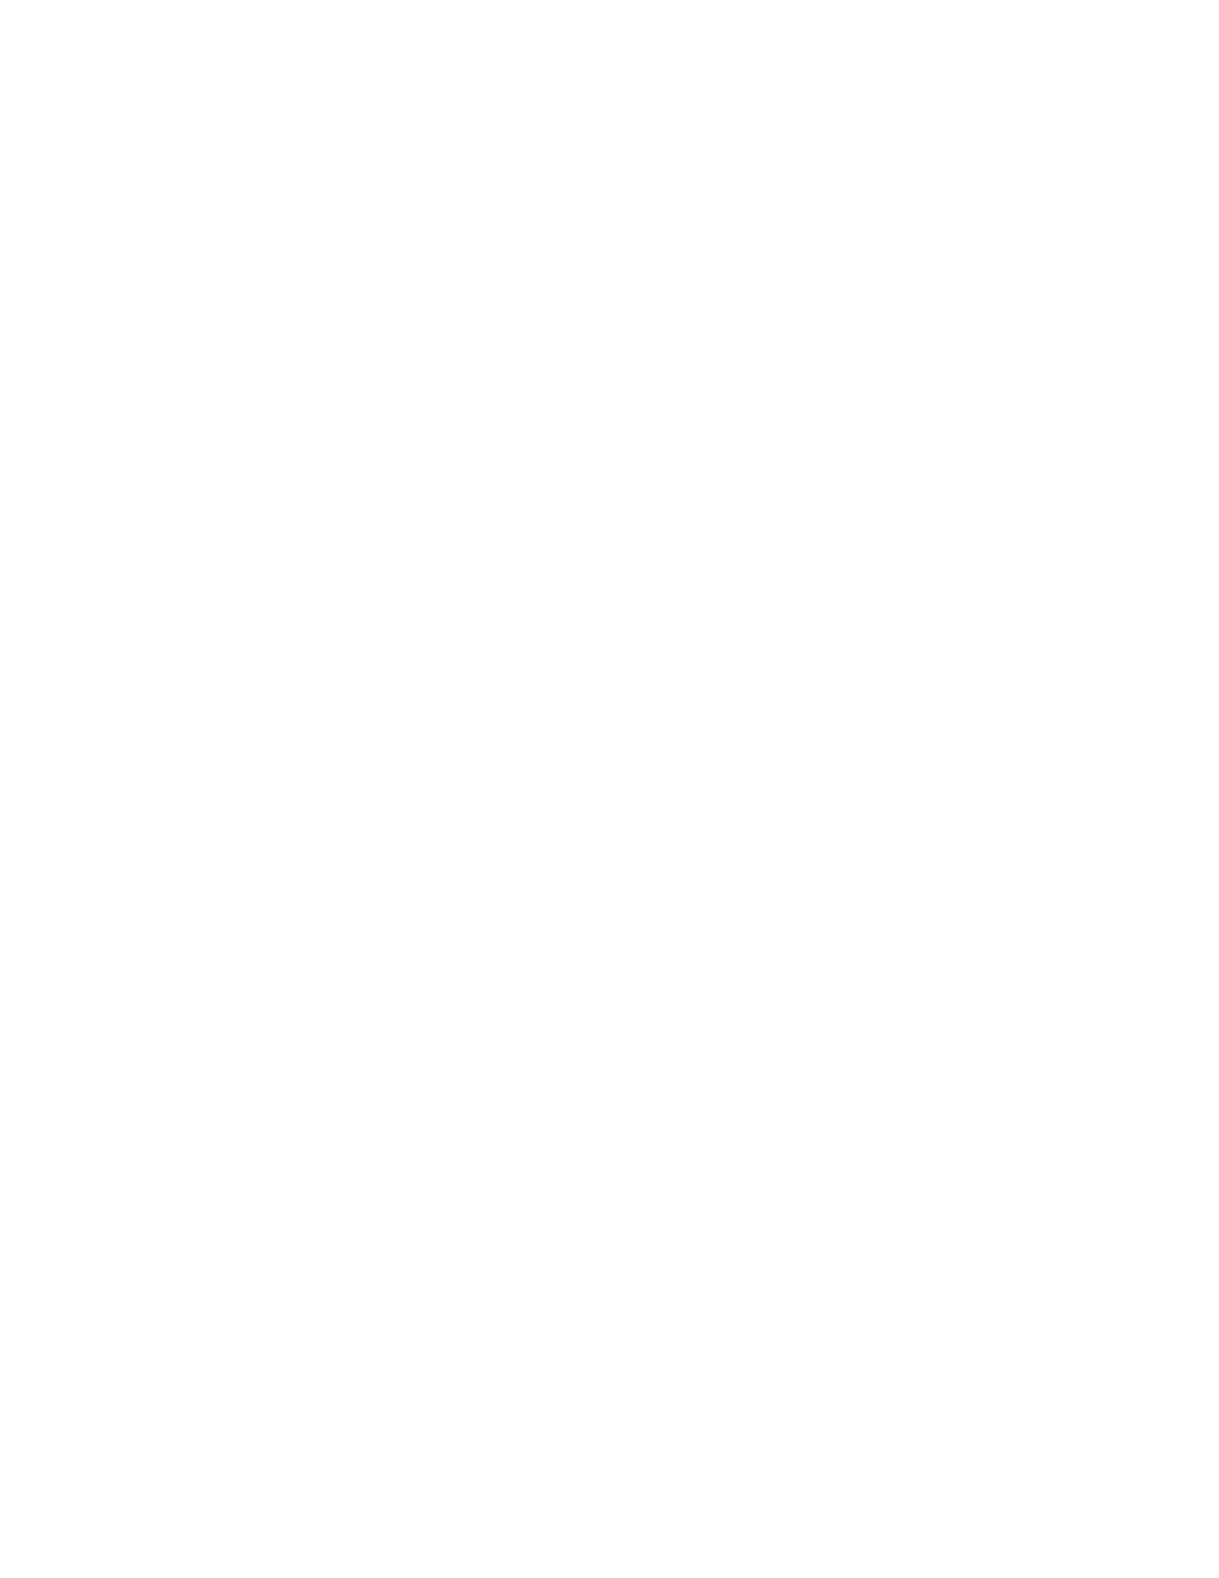 United Community Bank logo for dark backgrounds (transparent PNG)